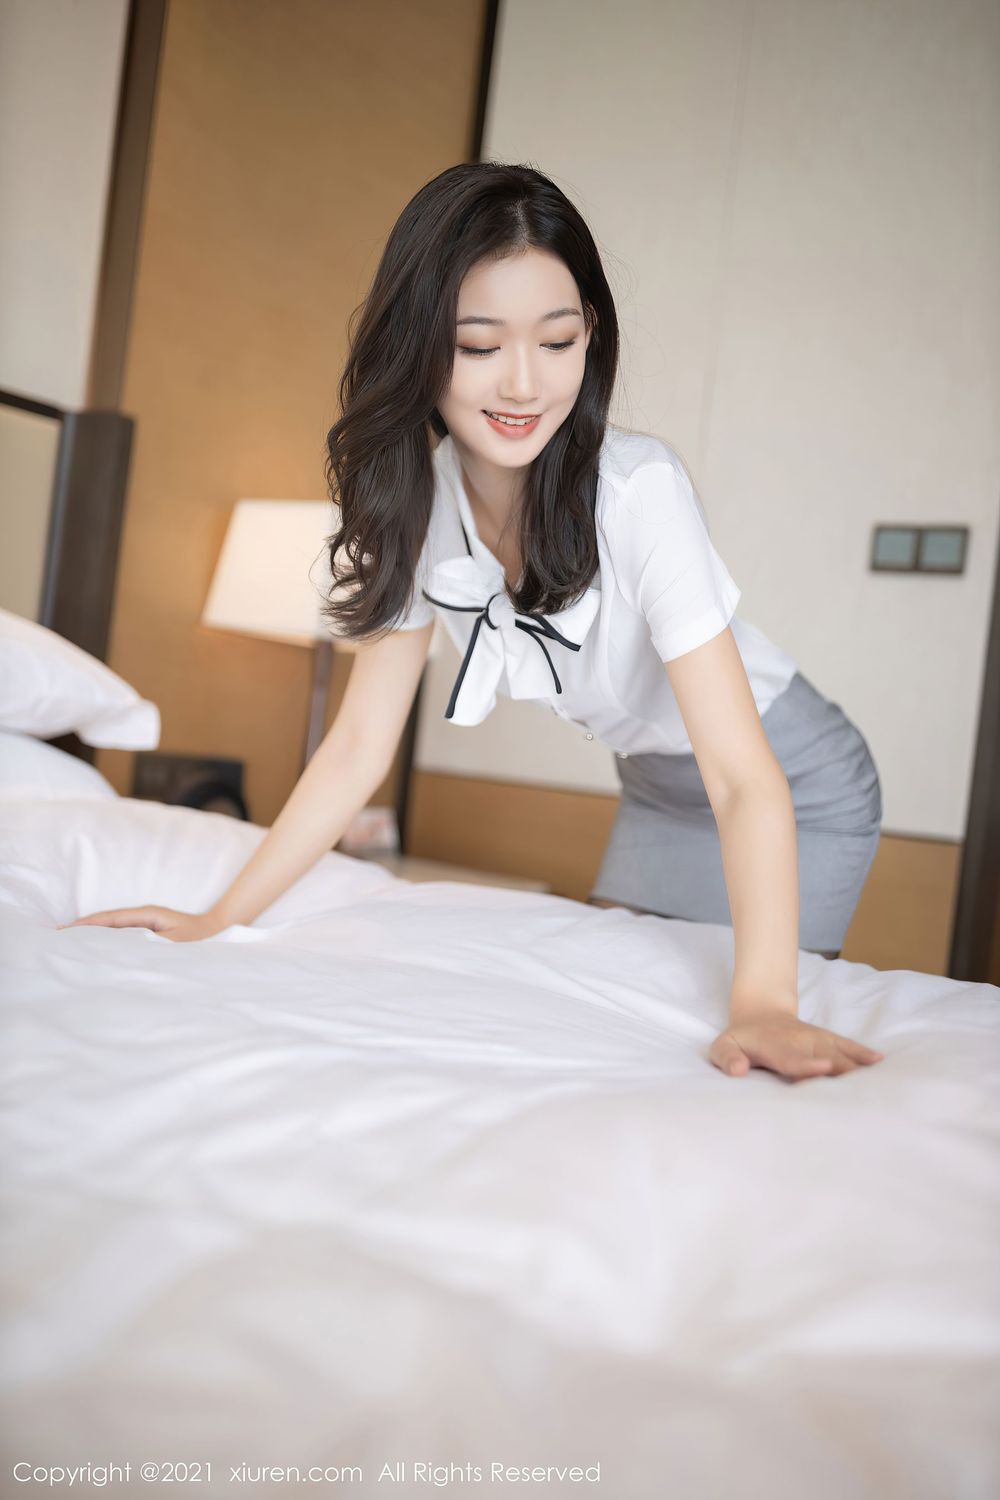 美女模特唐安琪 - 酒店宾客服务系列性感写真